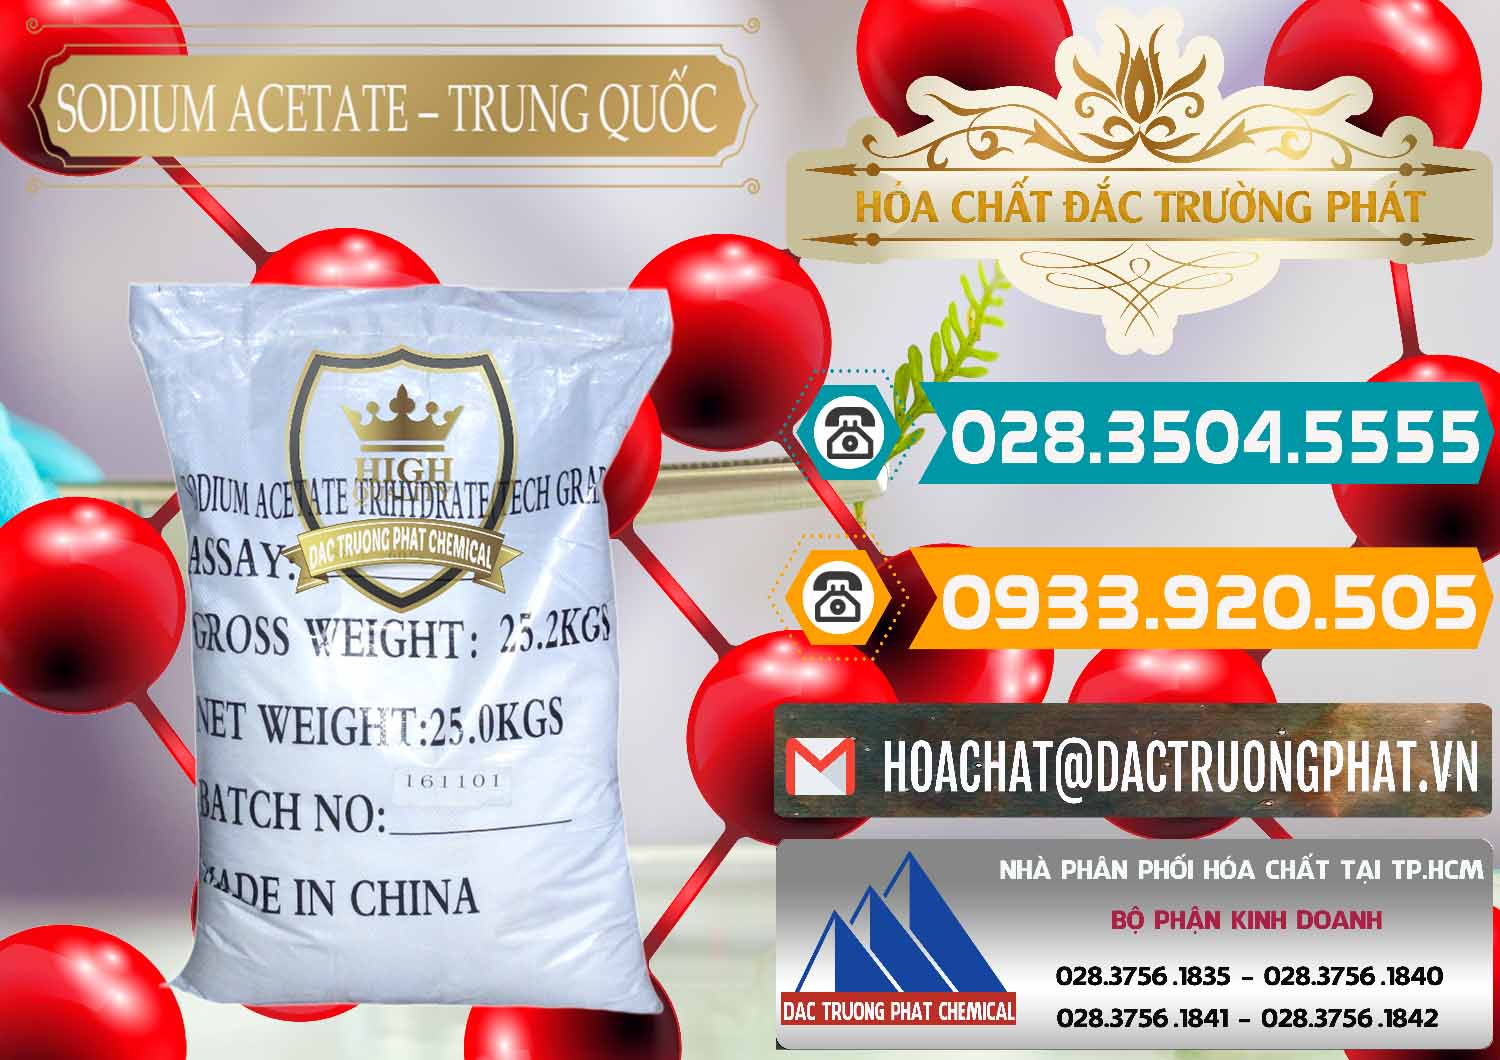 Cty chuyên cung cấp - bán Sodium Acetate - Natri Acetate Trung Quốc China - 0134 - Nơi cung cấp ( phân phối ) hóa chất tại TP.HCM - congtyhoachat.vn